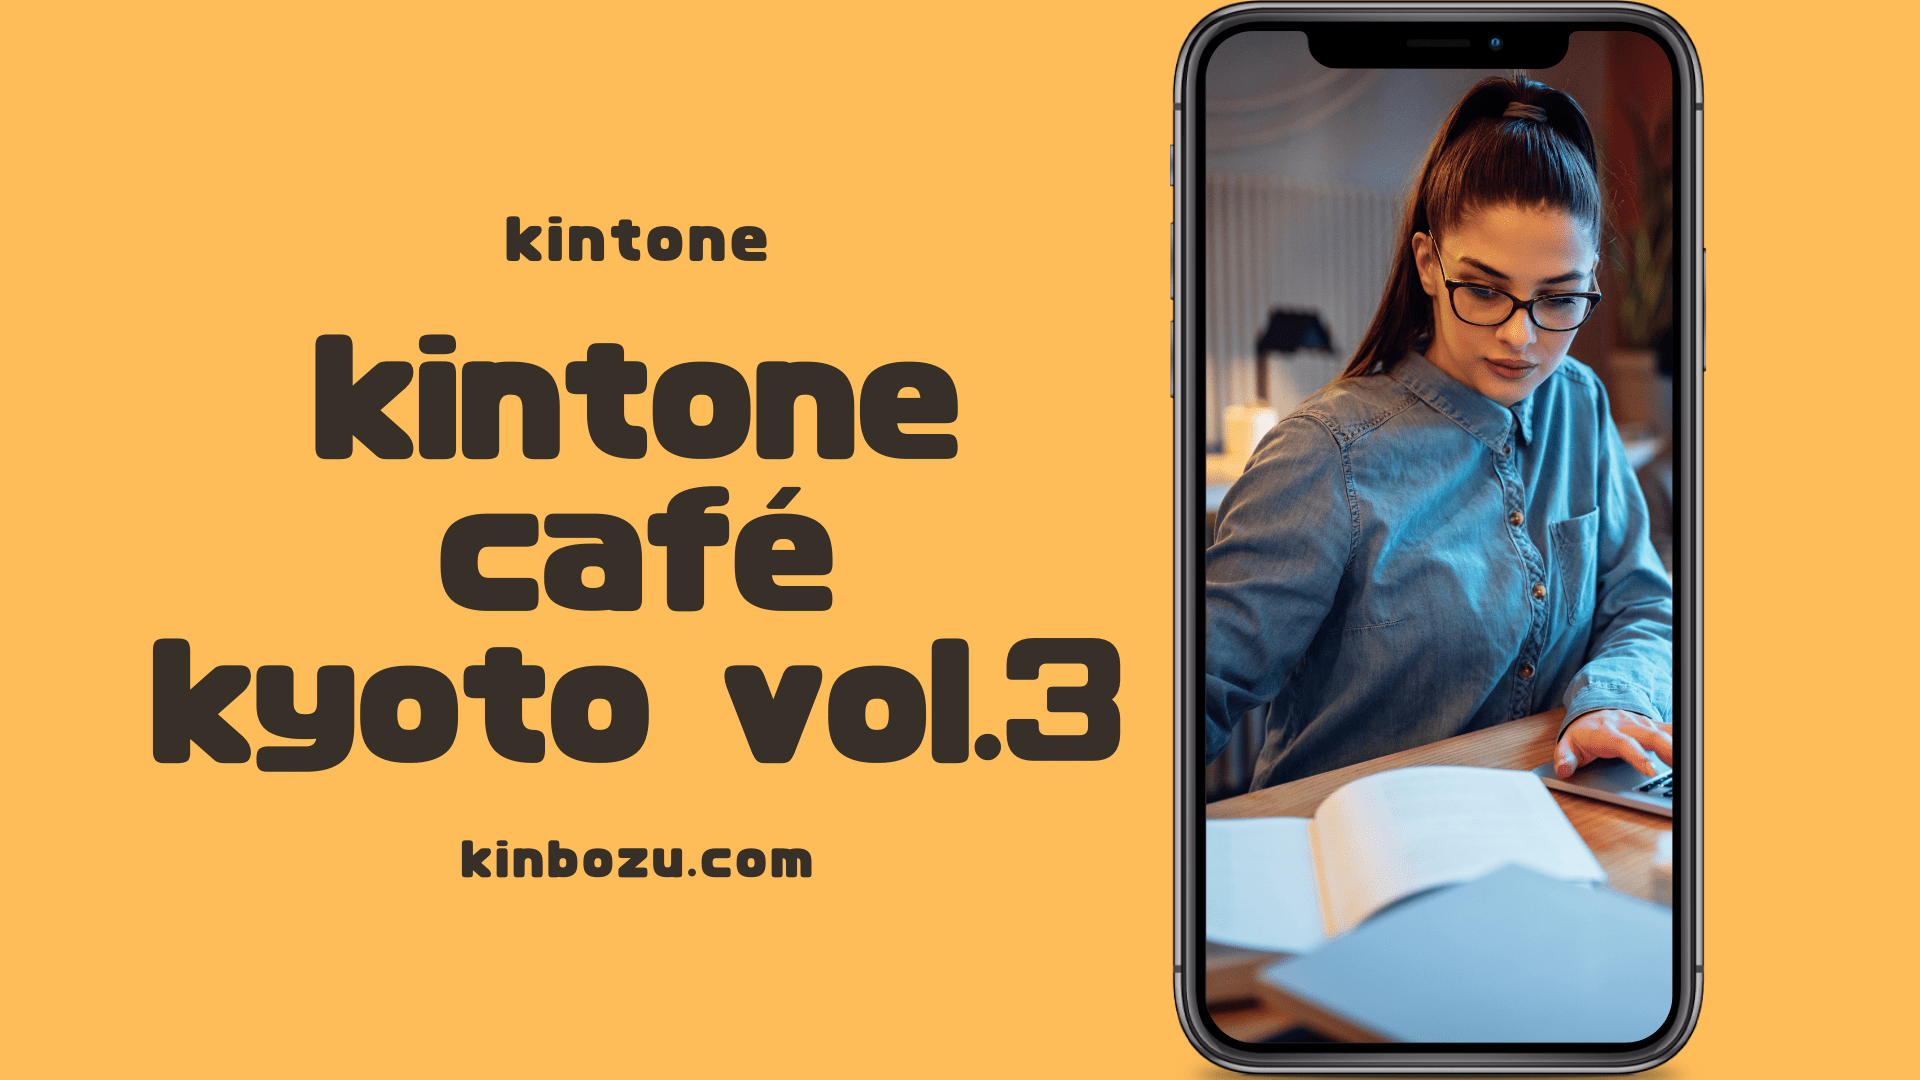 kintonecafekyoto Vol.3